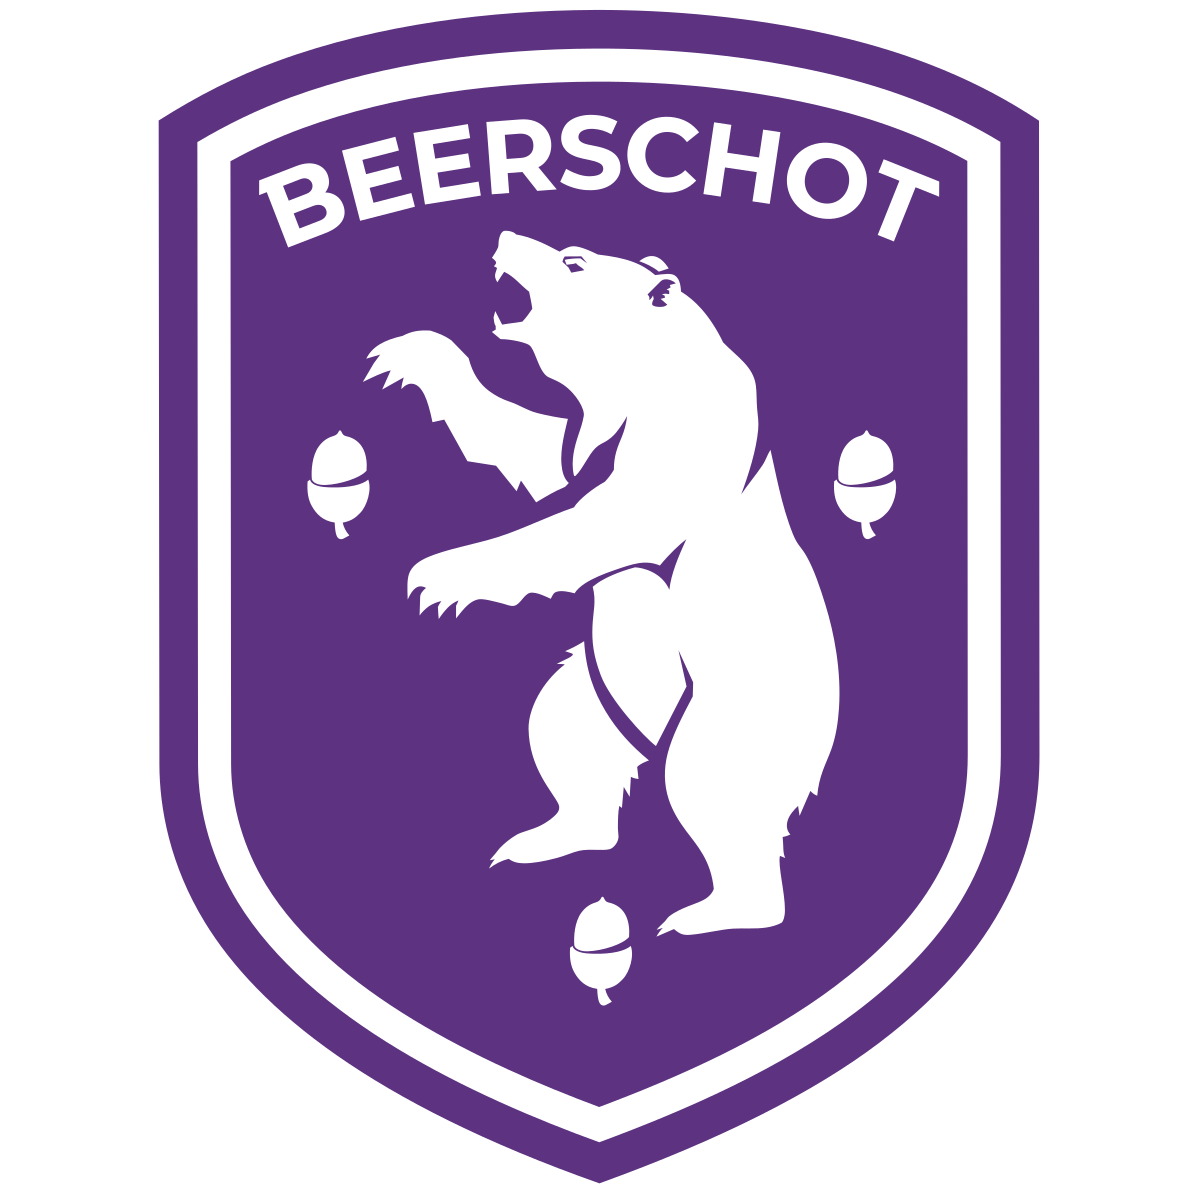 Beerschot-Wilrijk-2 logo